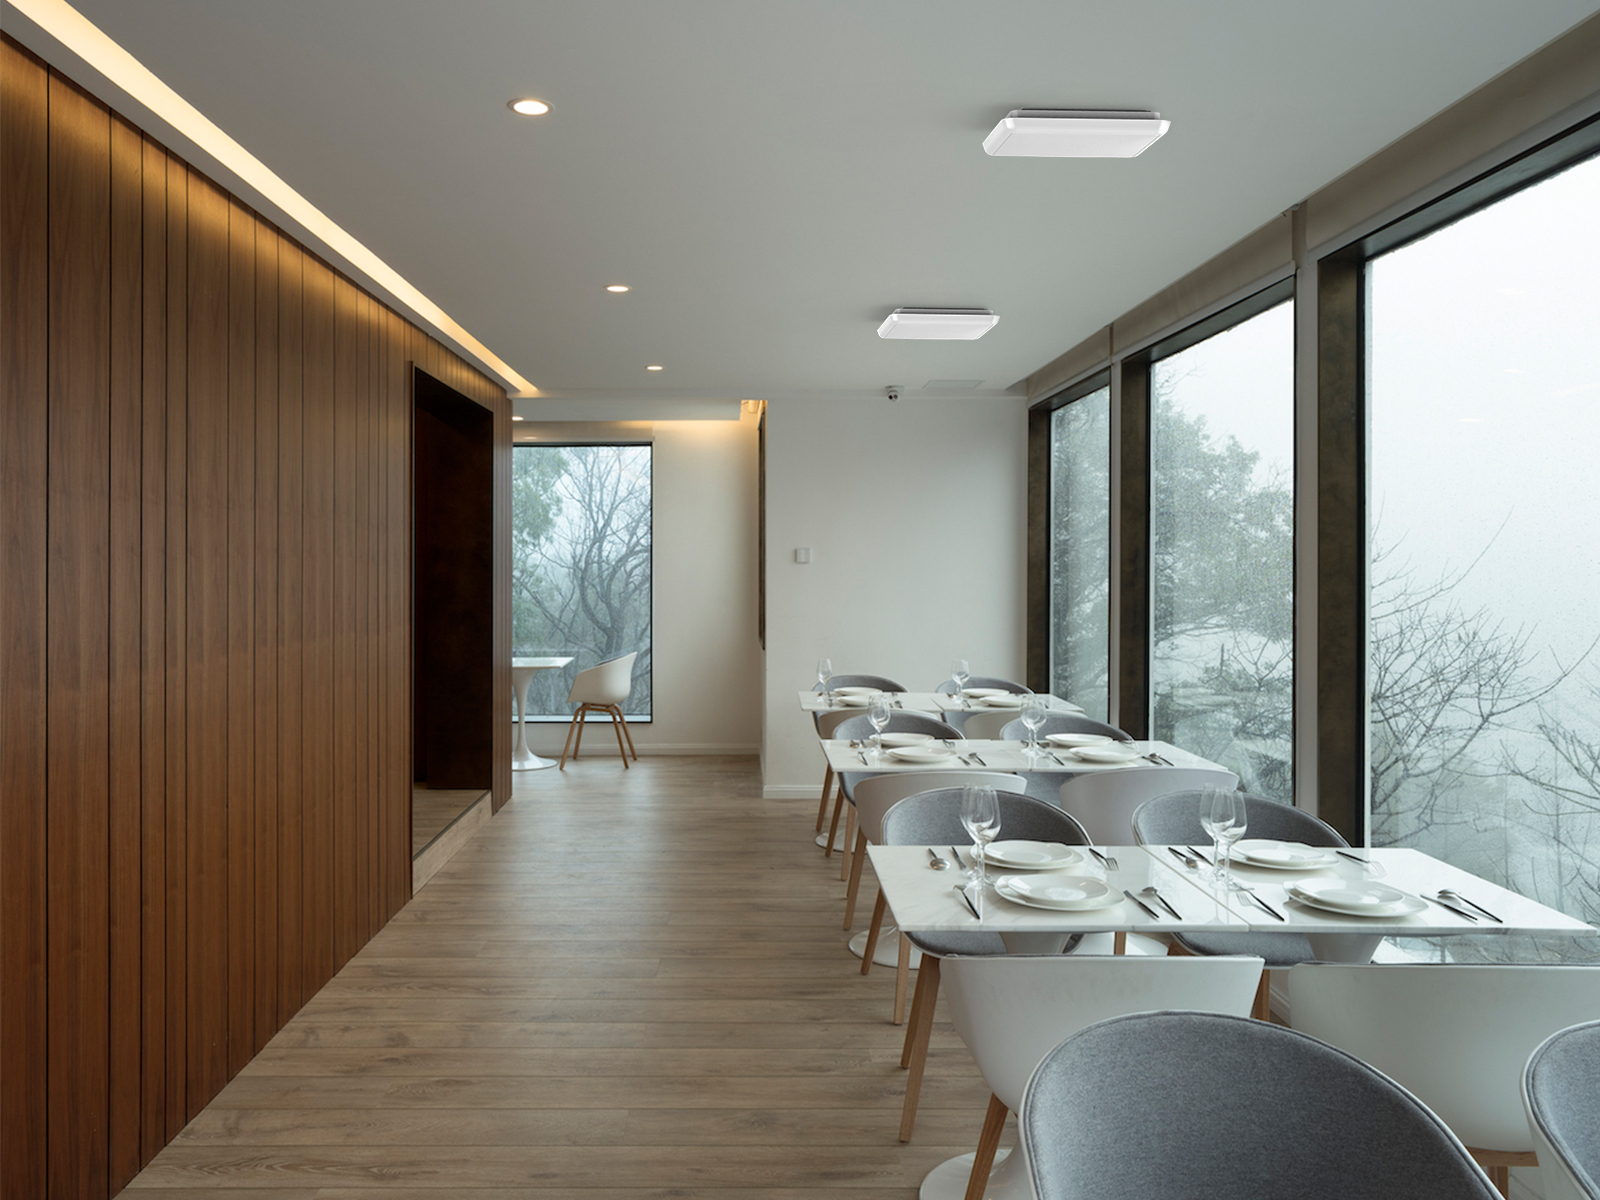 ceiling light fixtures for restaurant